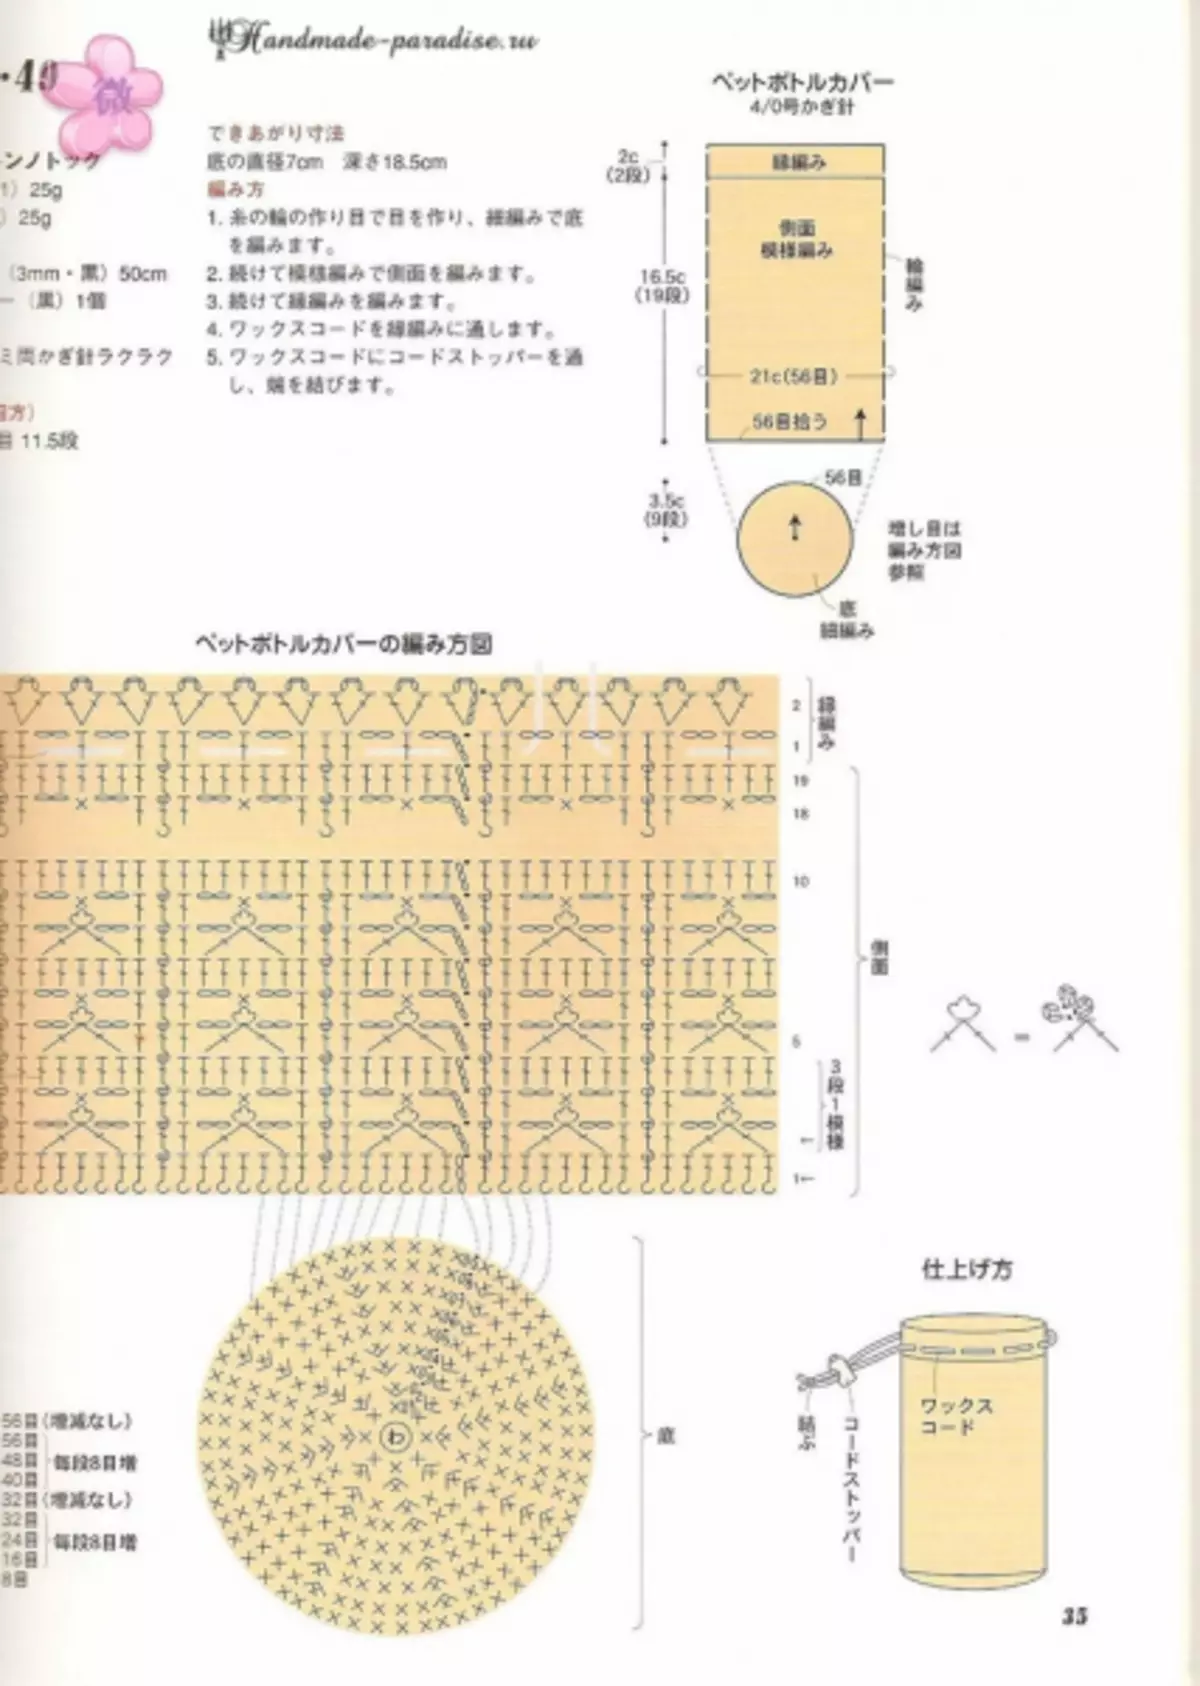 کرسی موسم گرما کی اشیاء. منصوبوں کے ساتھ جاپانی میگزین